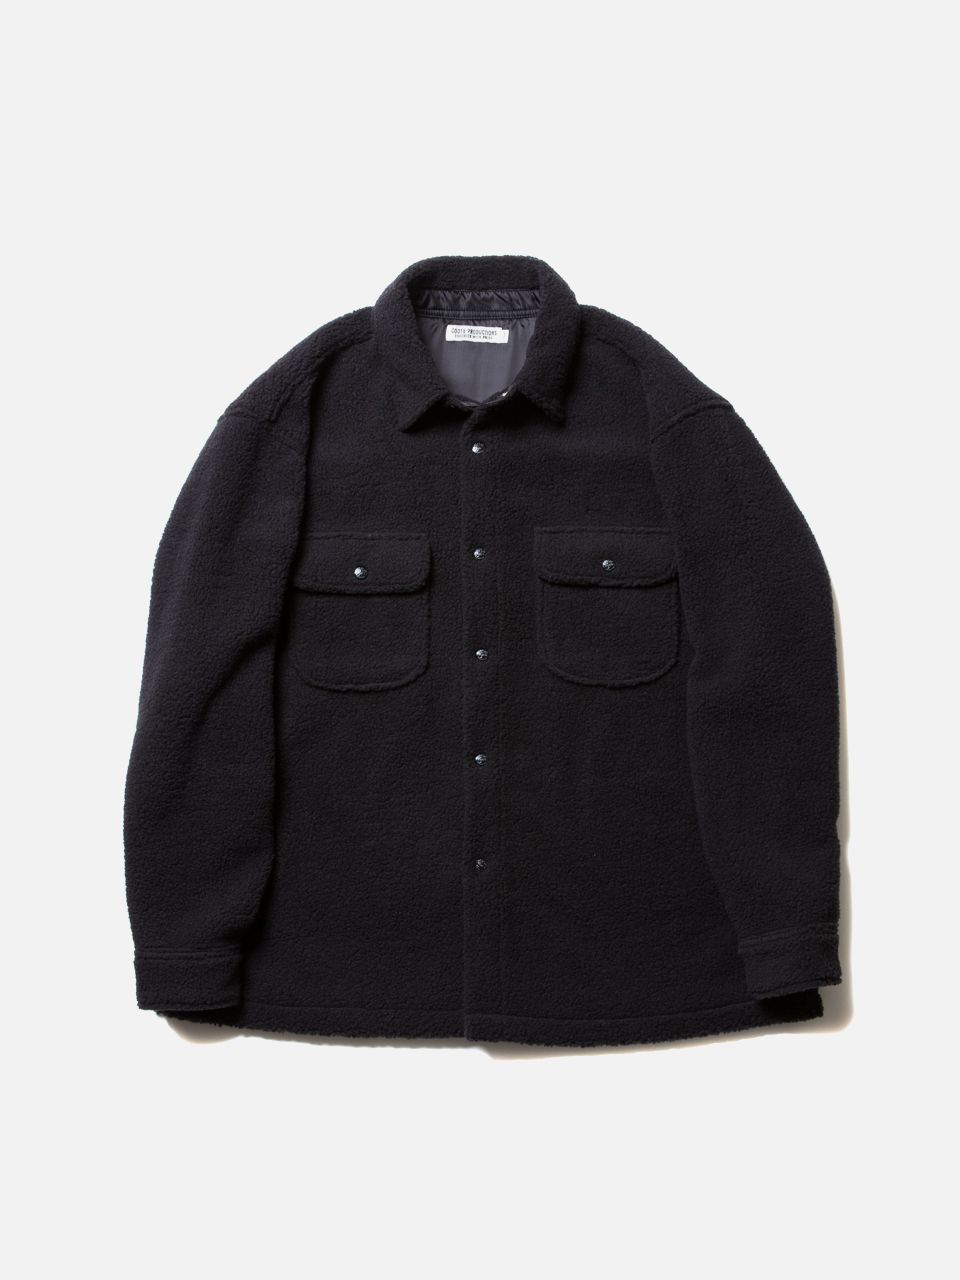 6,900円COOTIE PRODUCTIONS CPO jacket